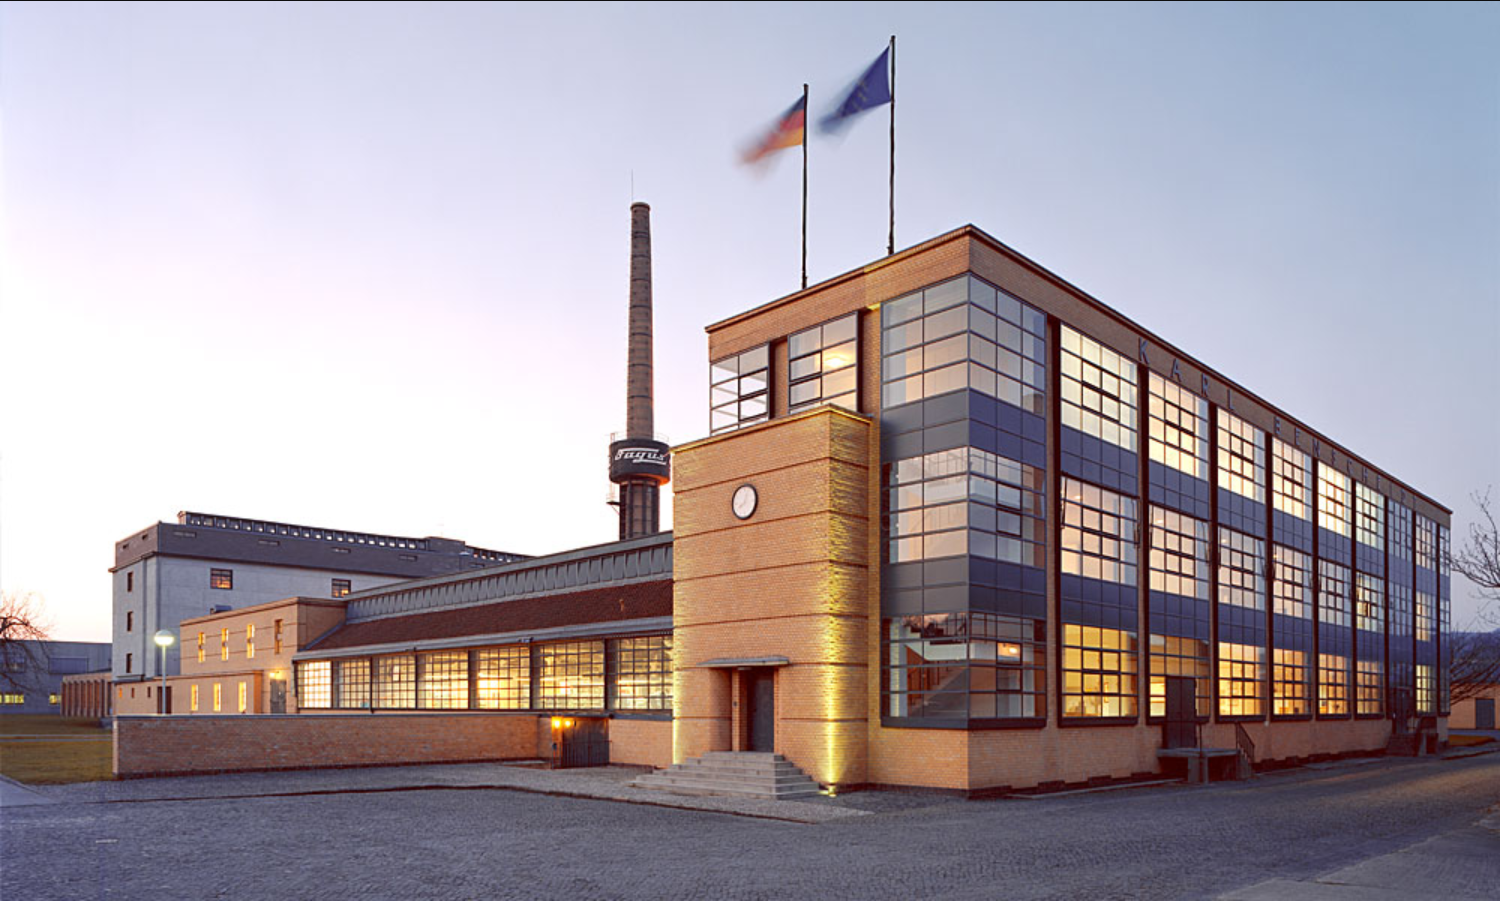 파구스 공장
Fagus Factory